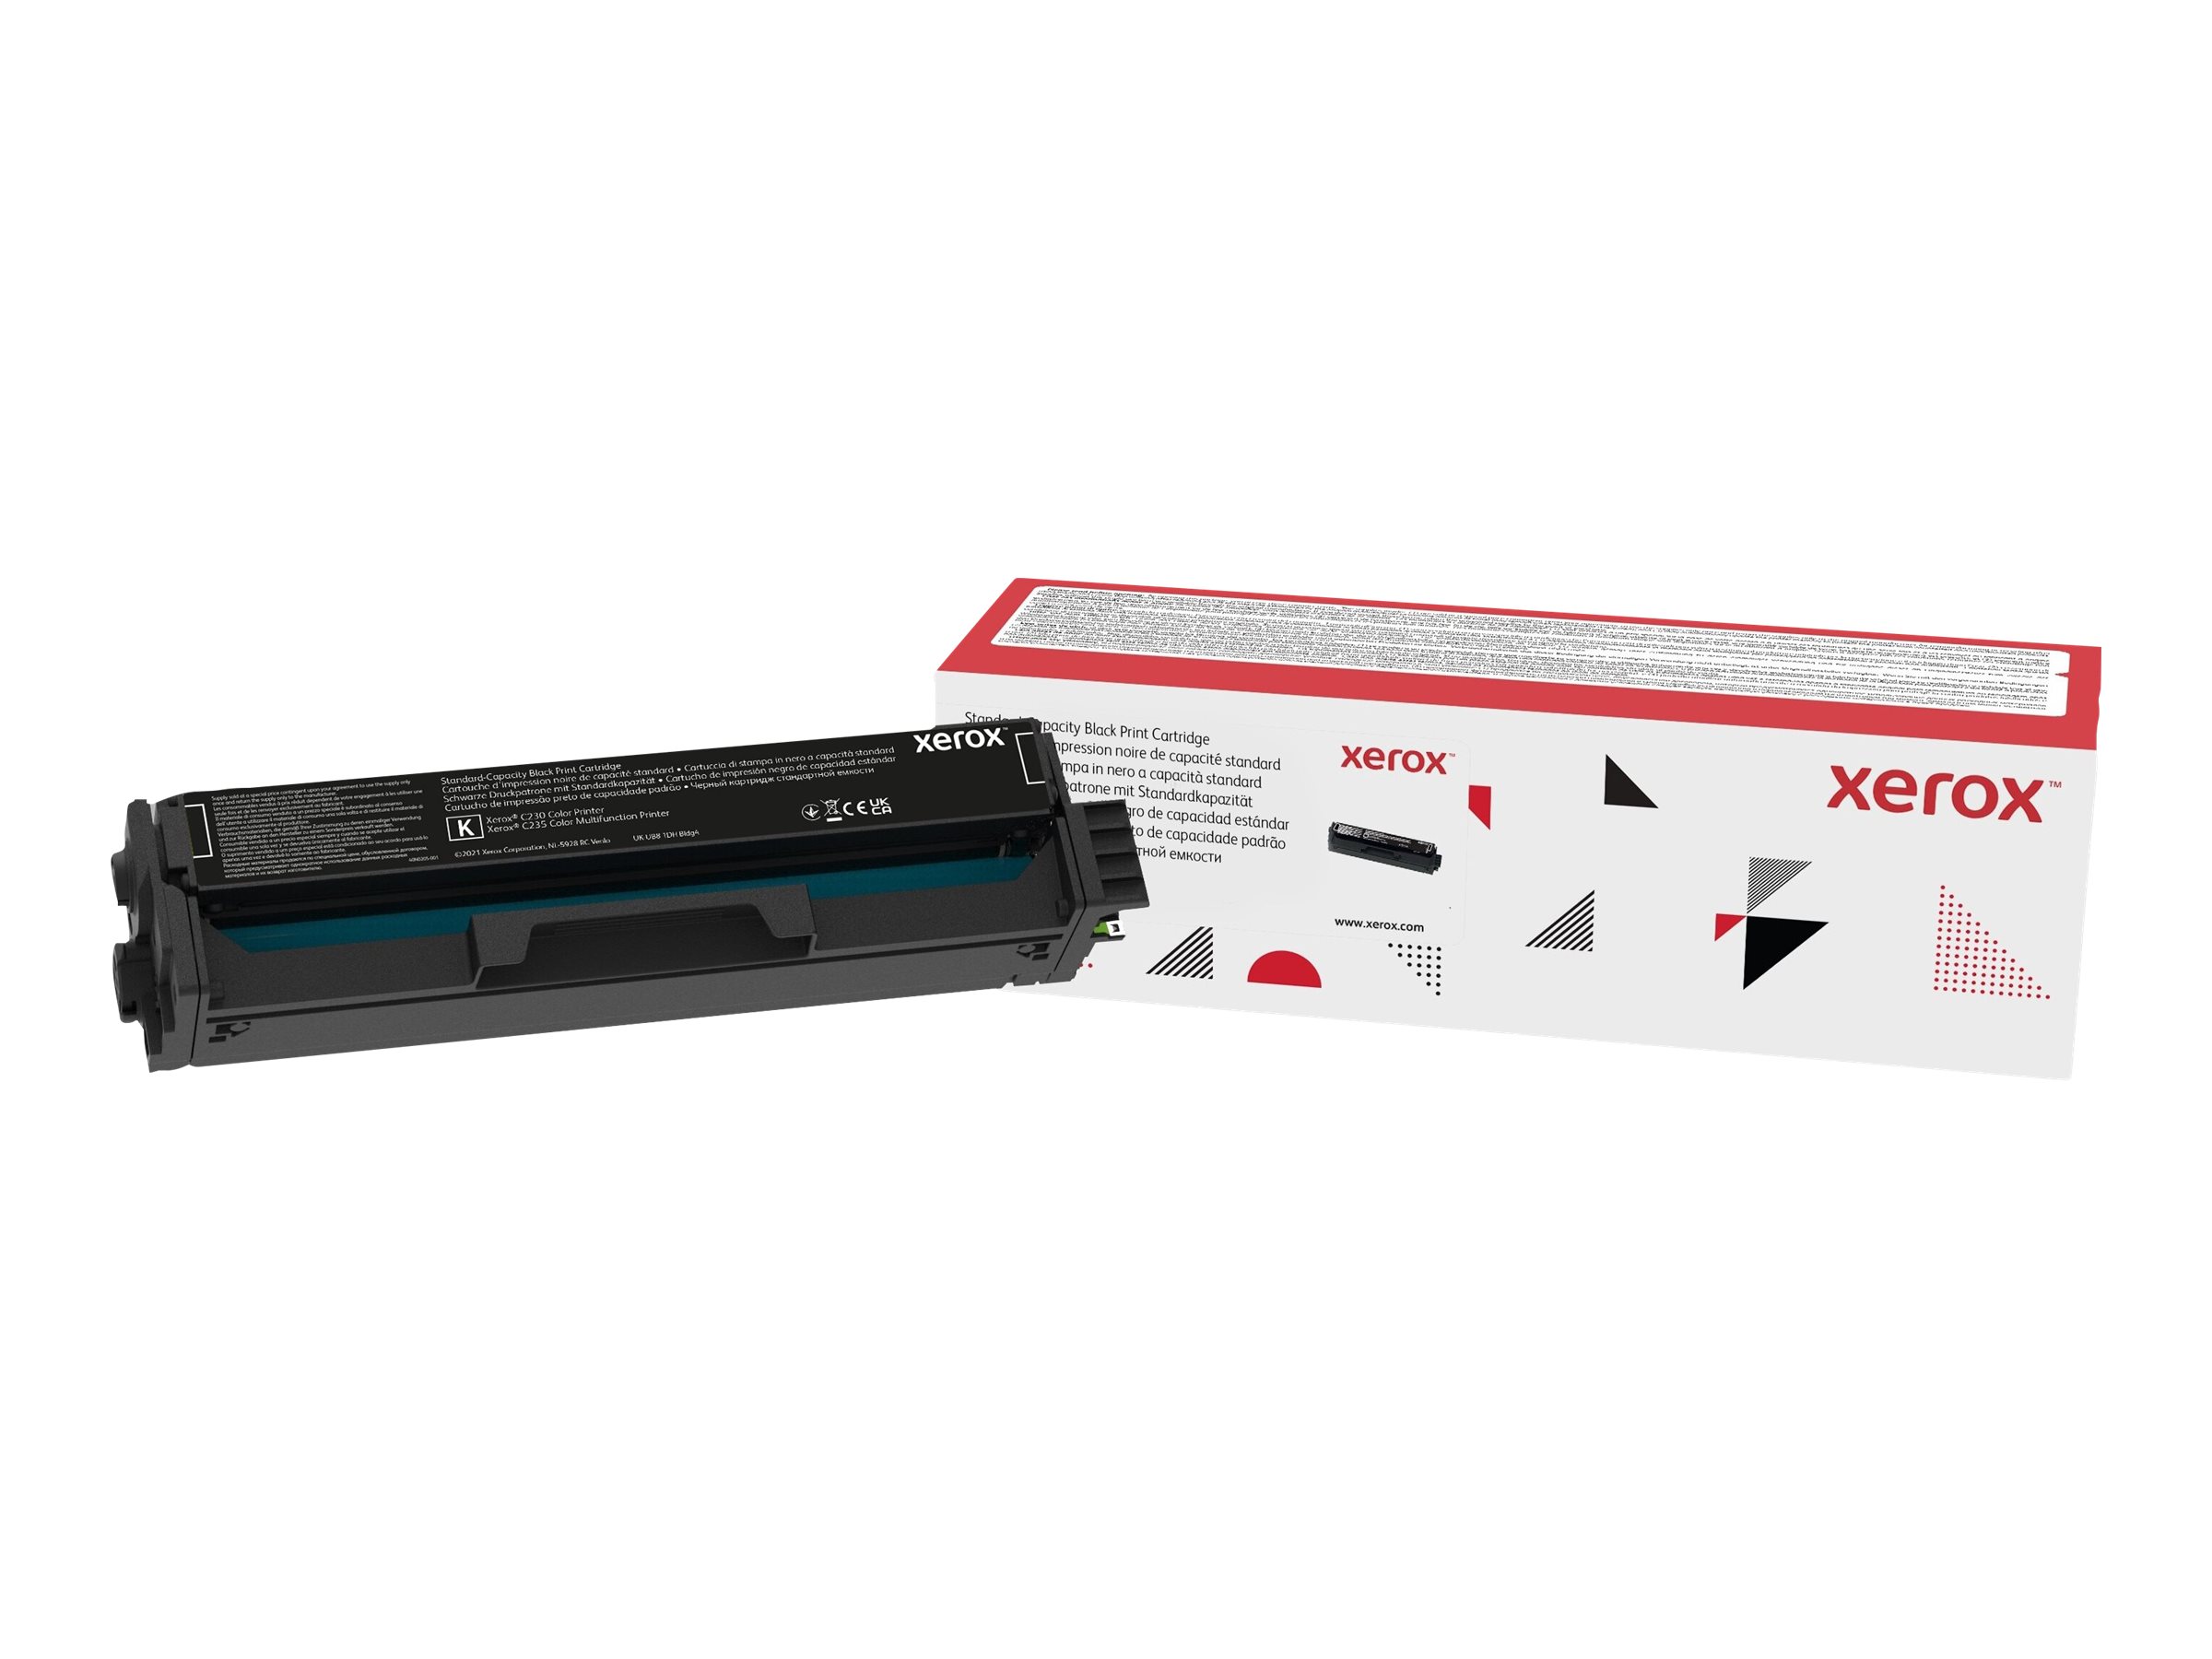 Xerox - Noir - original - cartouche de toner - pour Xerox C230, C230/DNI, C230V_DNIUK, C235, C235/DNI, C235V_DNIUK - 006R04383 - Autres cartouches de toner